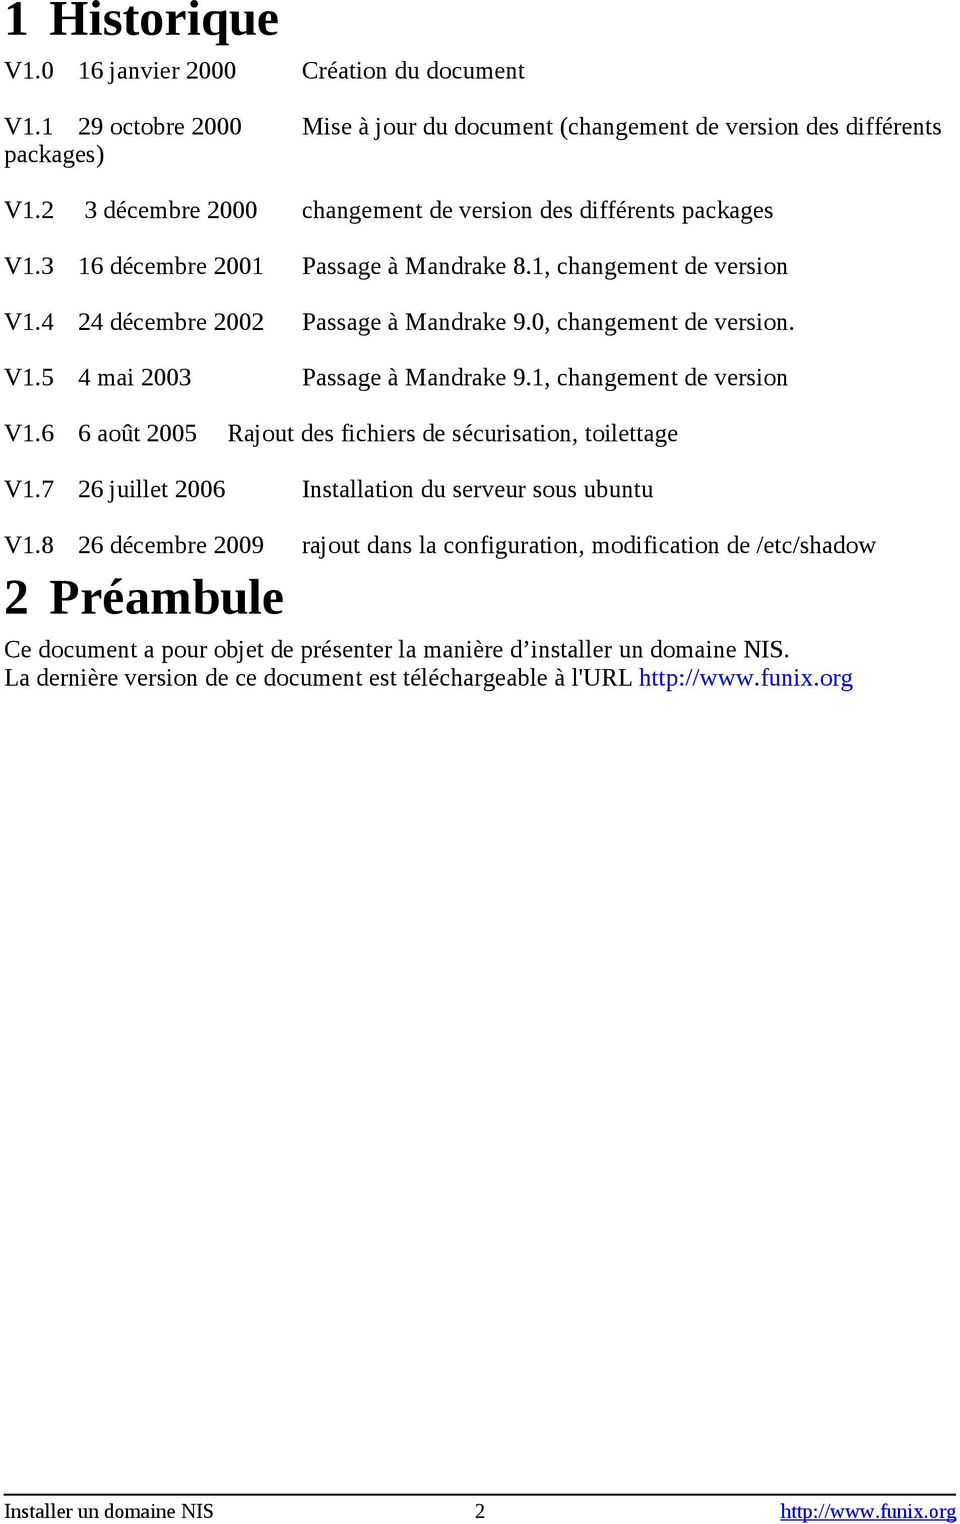 V1.5 4 mai 2003 Passage à Mandrake 9.1, changement de version V1.6 6 août 2005 Rajout des fichiers de sécurisation, toilettage V1.7 26 juillet 2006 Installation du serveur sous ubuntu V1.